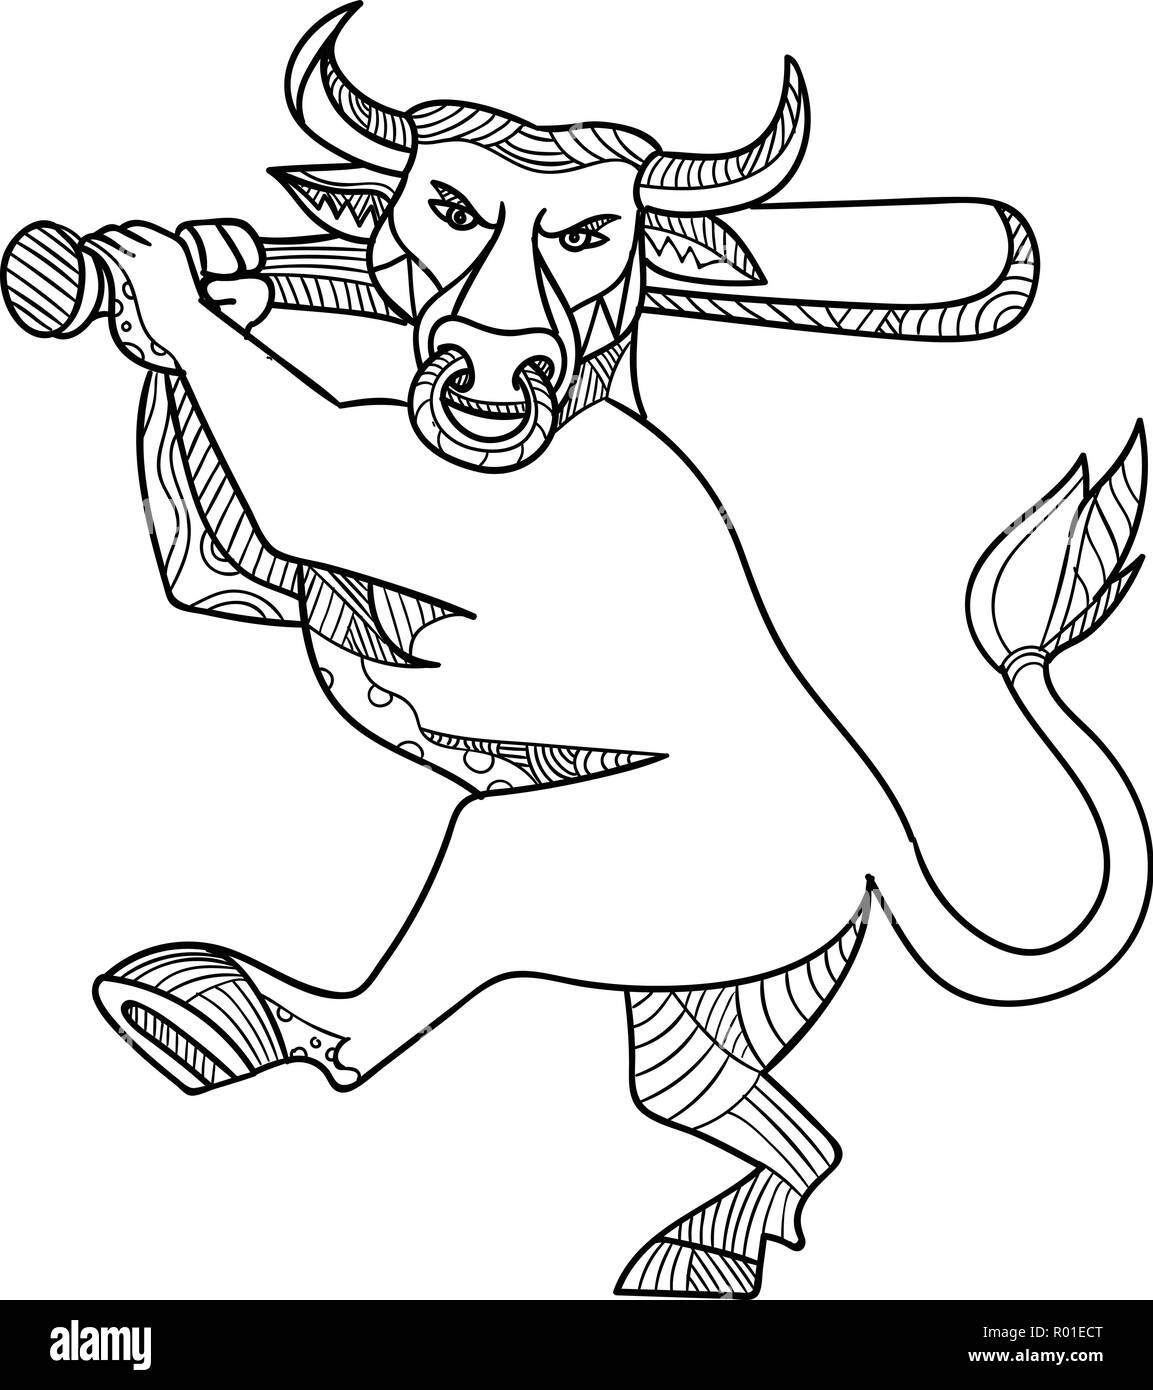 Ingresso linea mono illustrazione del Texas longhorn bull battere con la mazza da baseball in bianco e nero eseguita in stile monolinea. Illustrazione Vettoriale